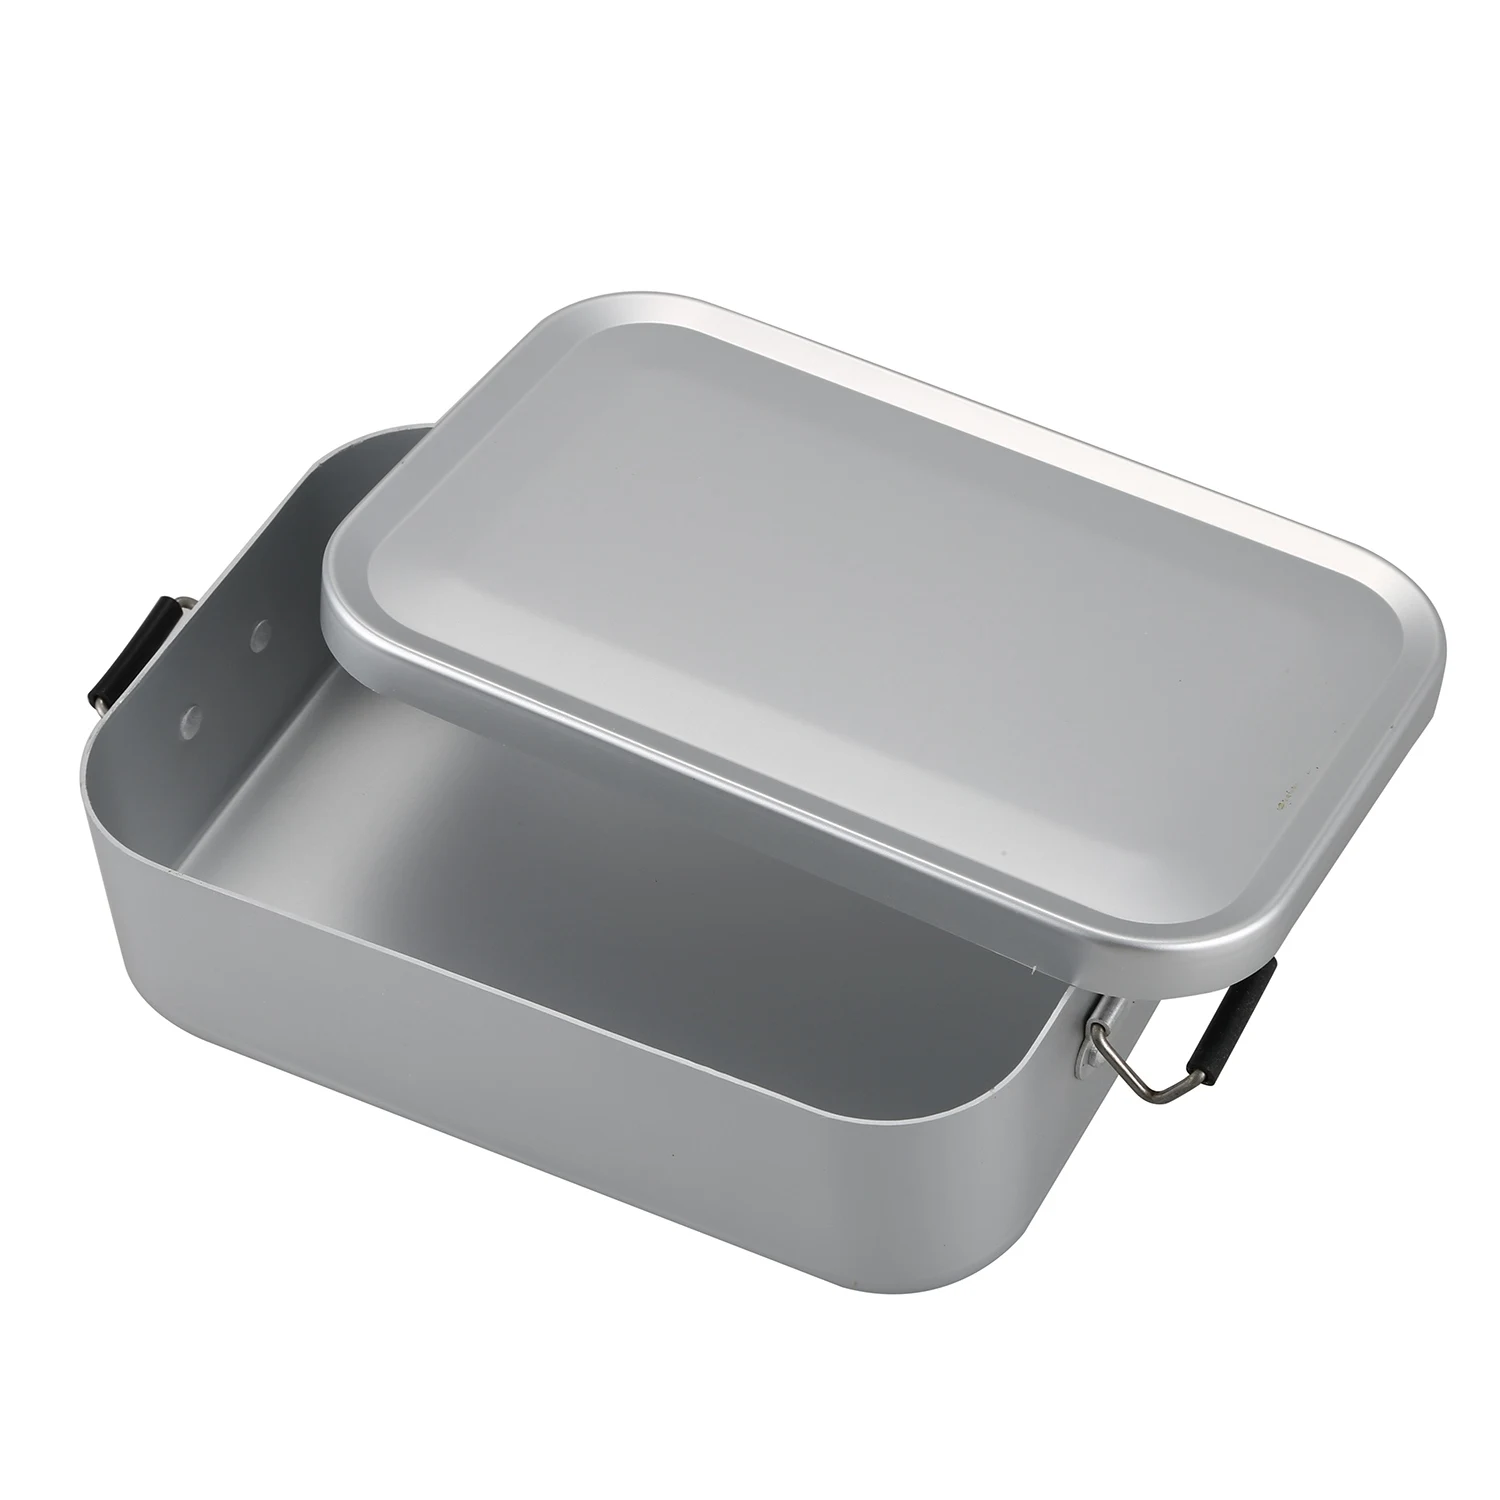 Открытый Ланч-бокс, походный набор посуды для пикника, обеденный ящик, набор кухонной плиты, беспорядок, олово, алюминий